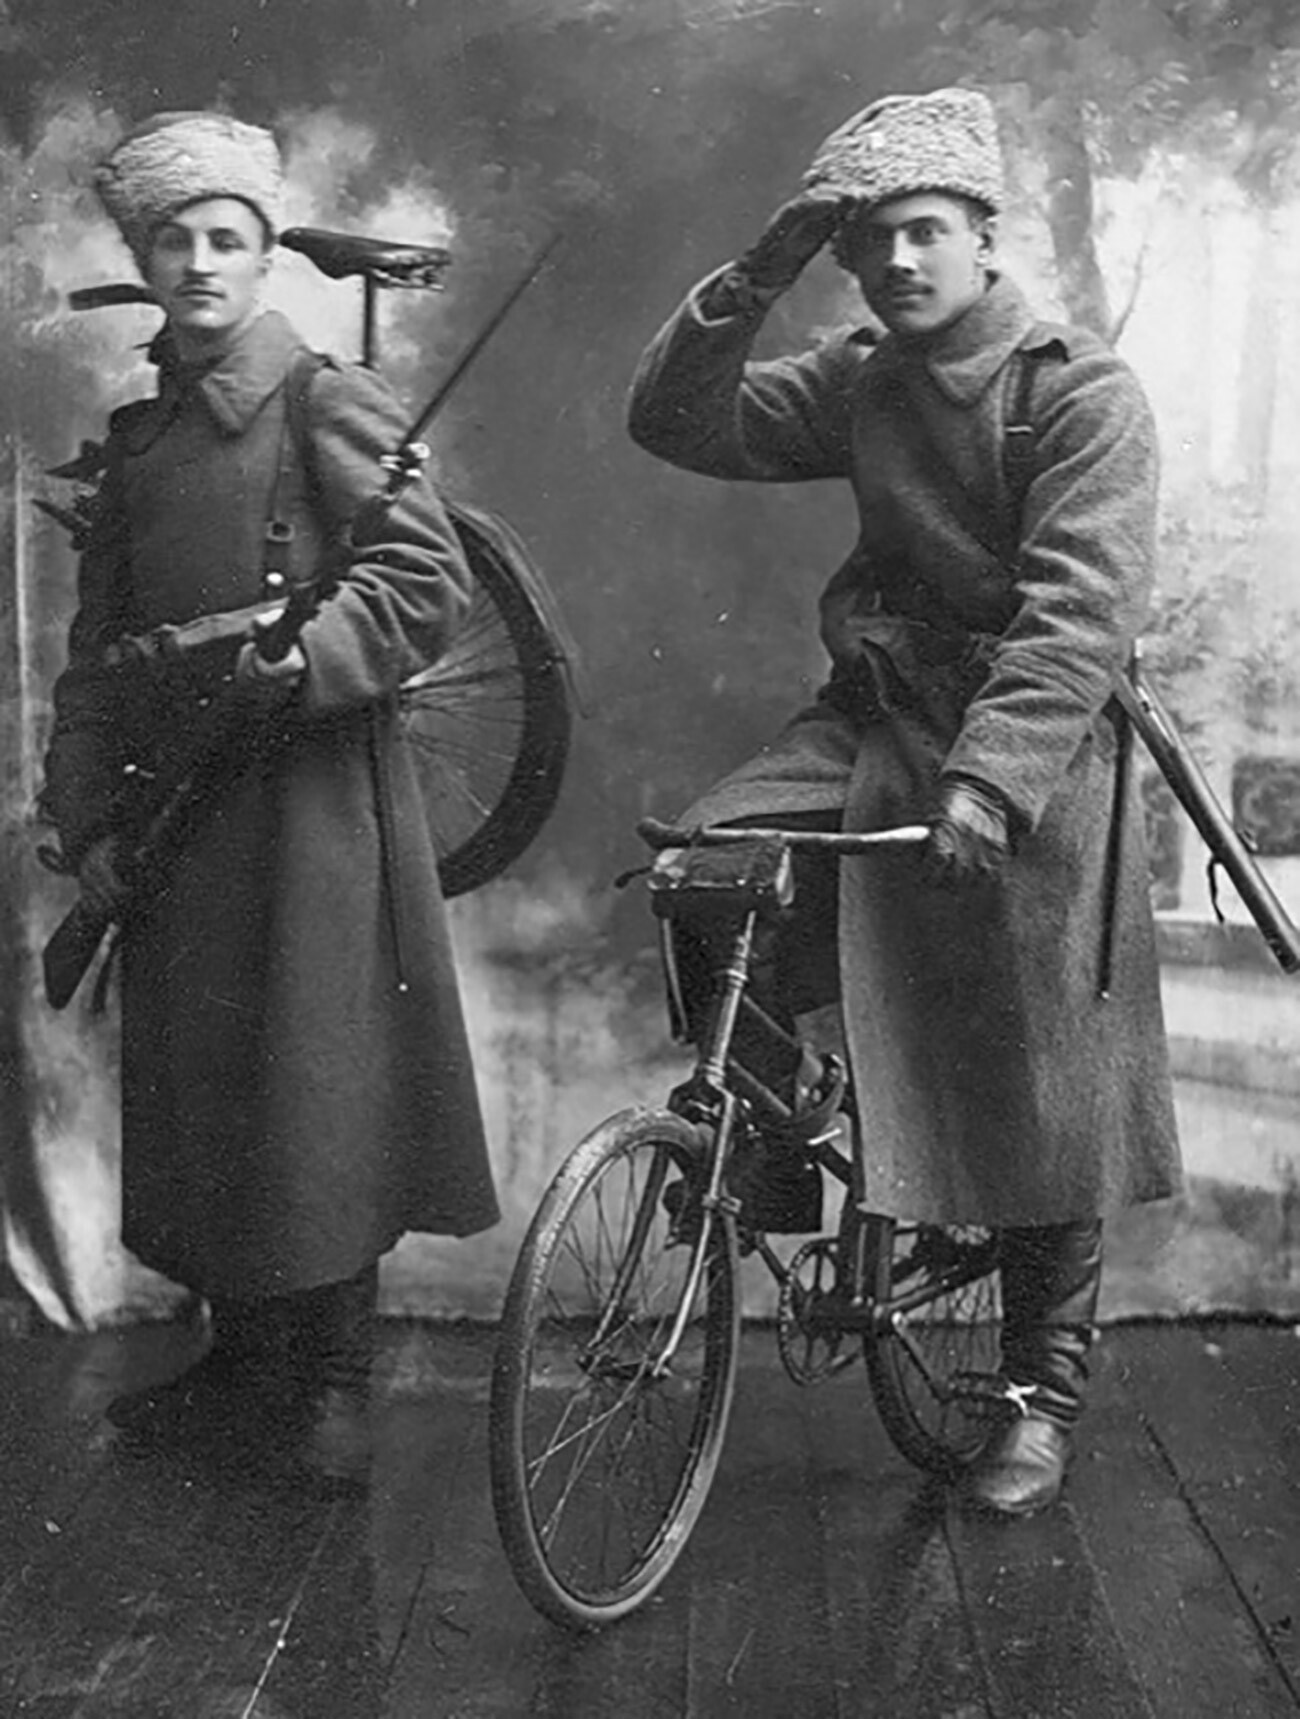 Cyclistes de l’armée impériale russe, vers 1910-1916